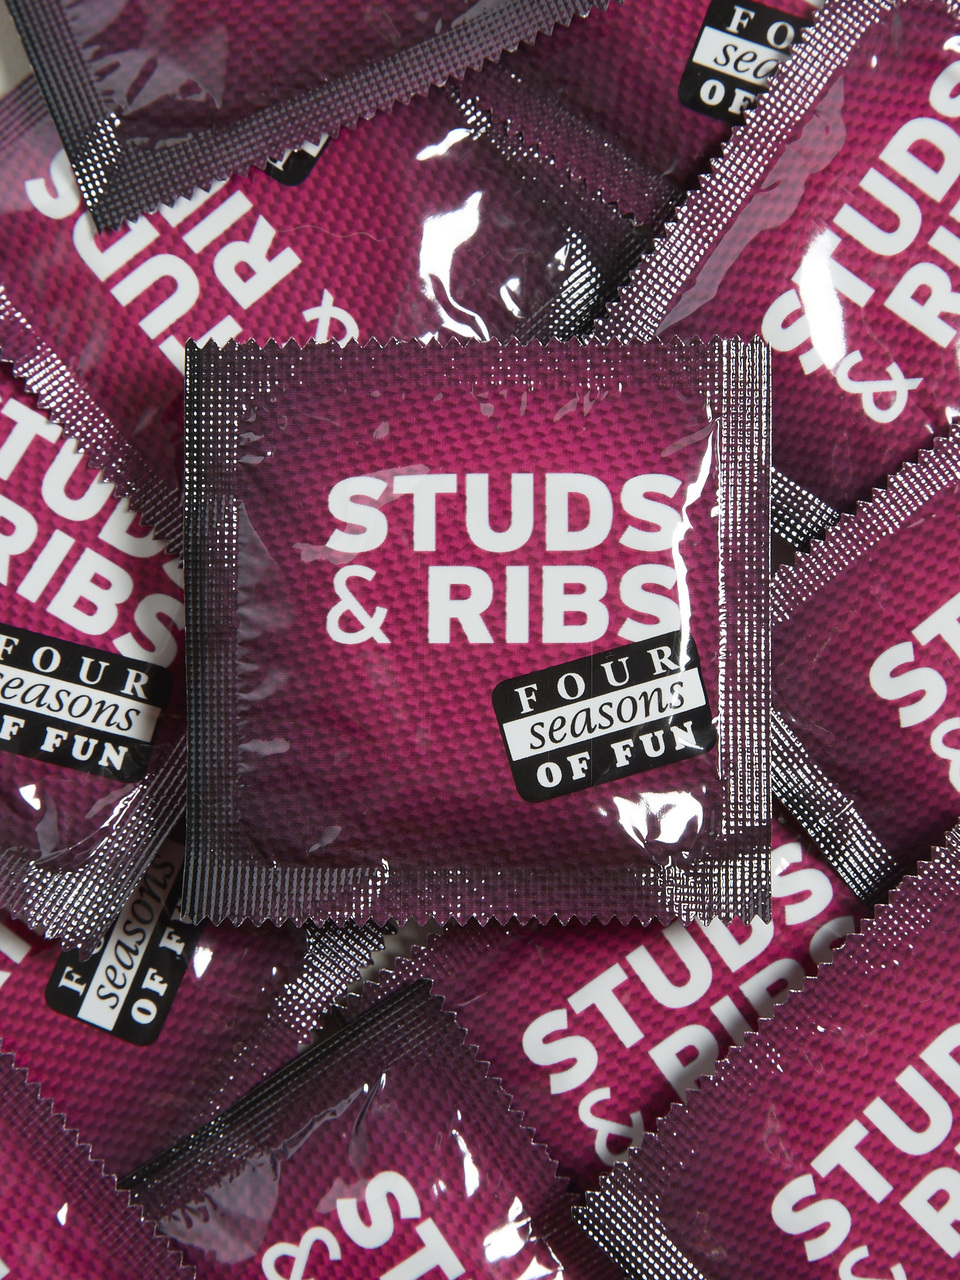 Top Condoms For Women In 2021